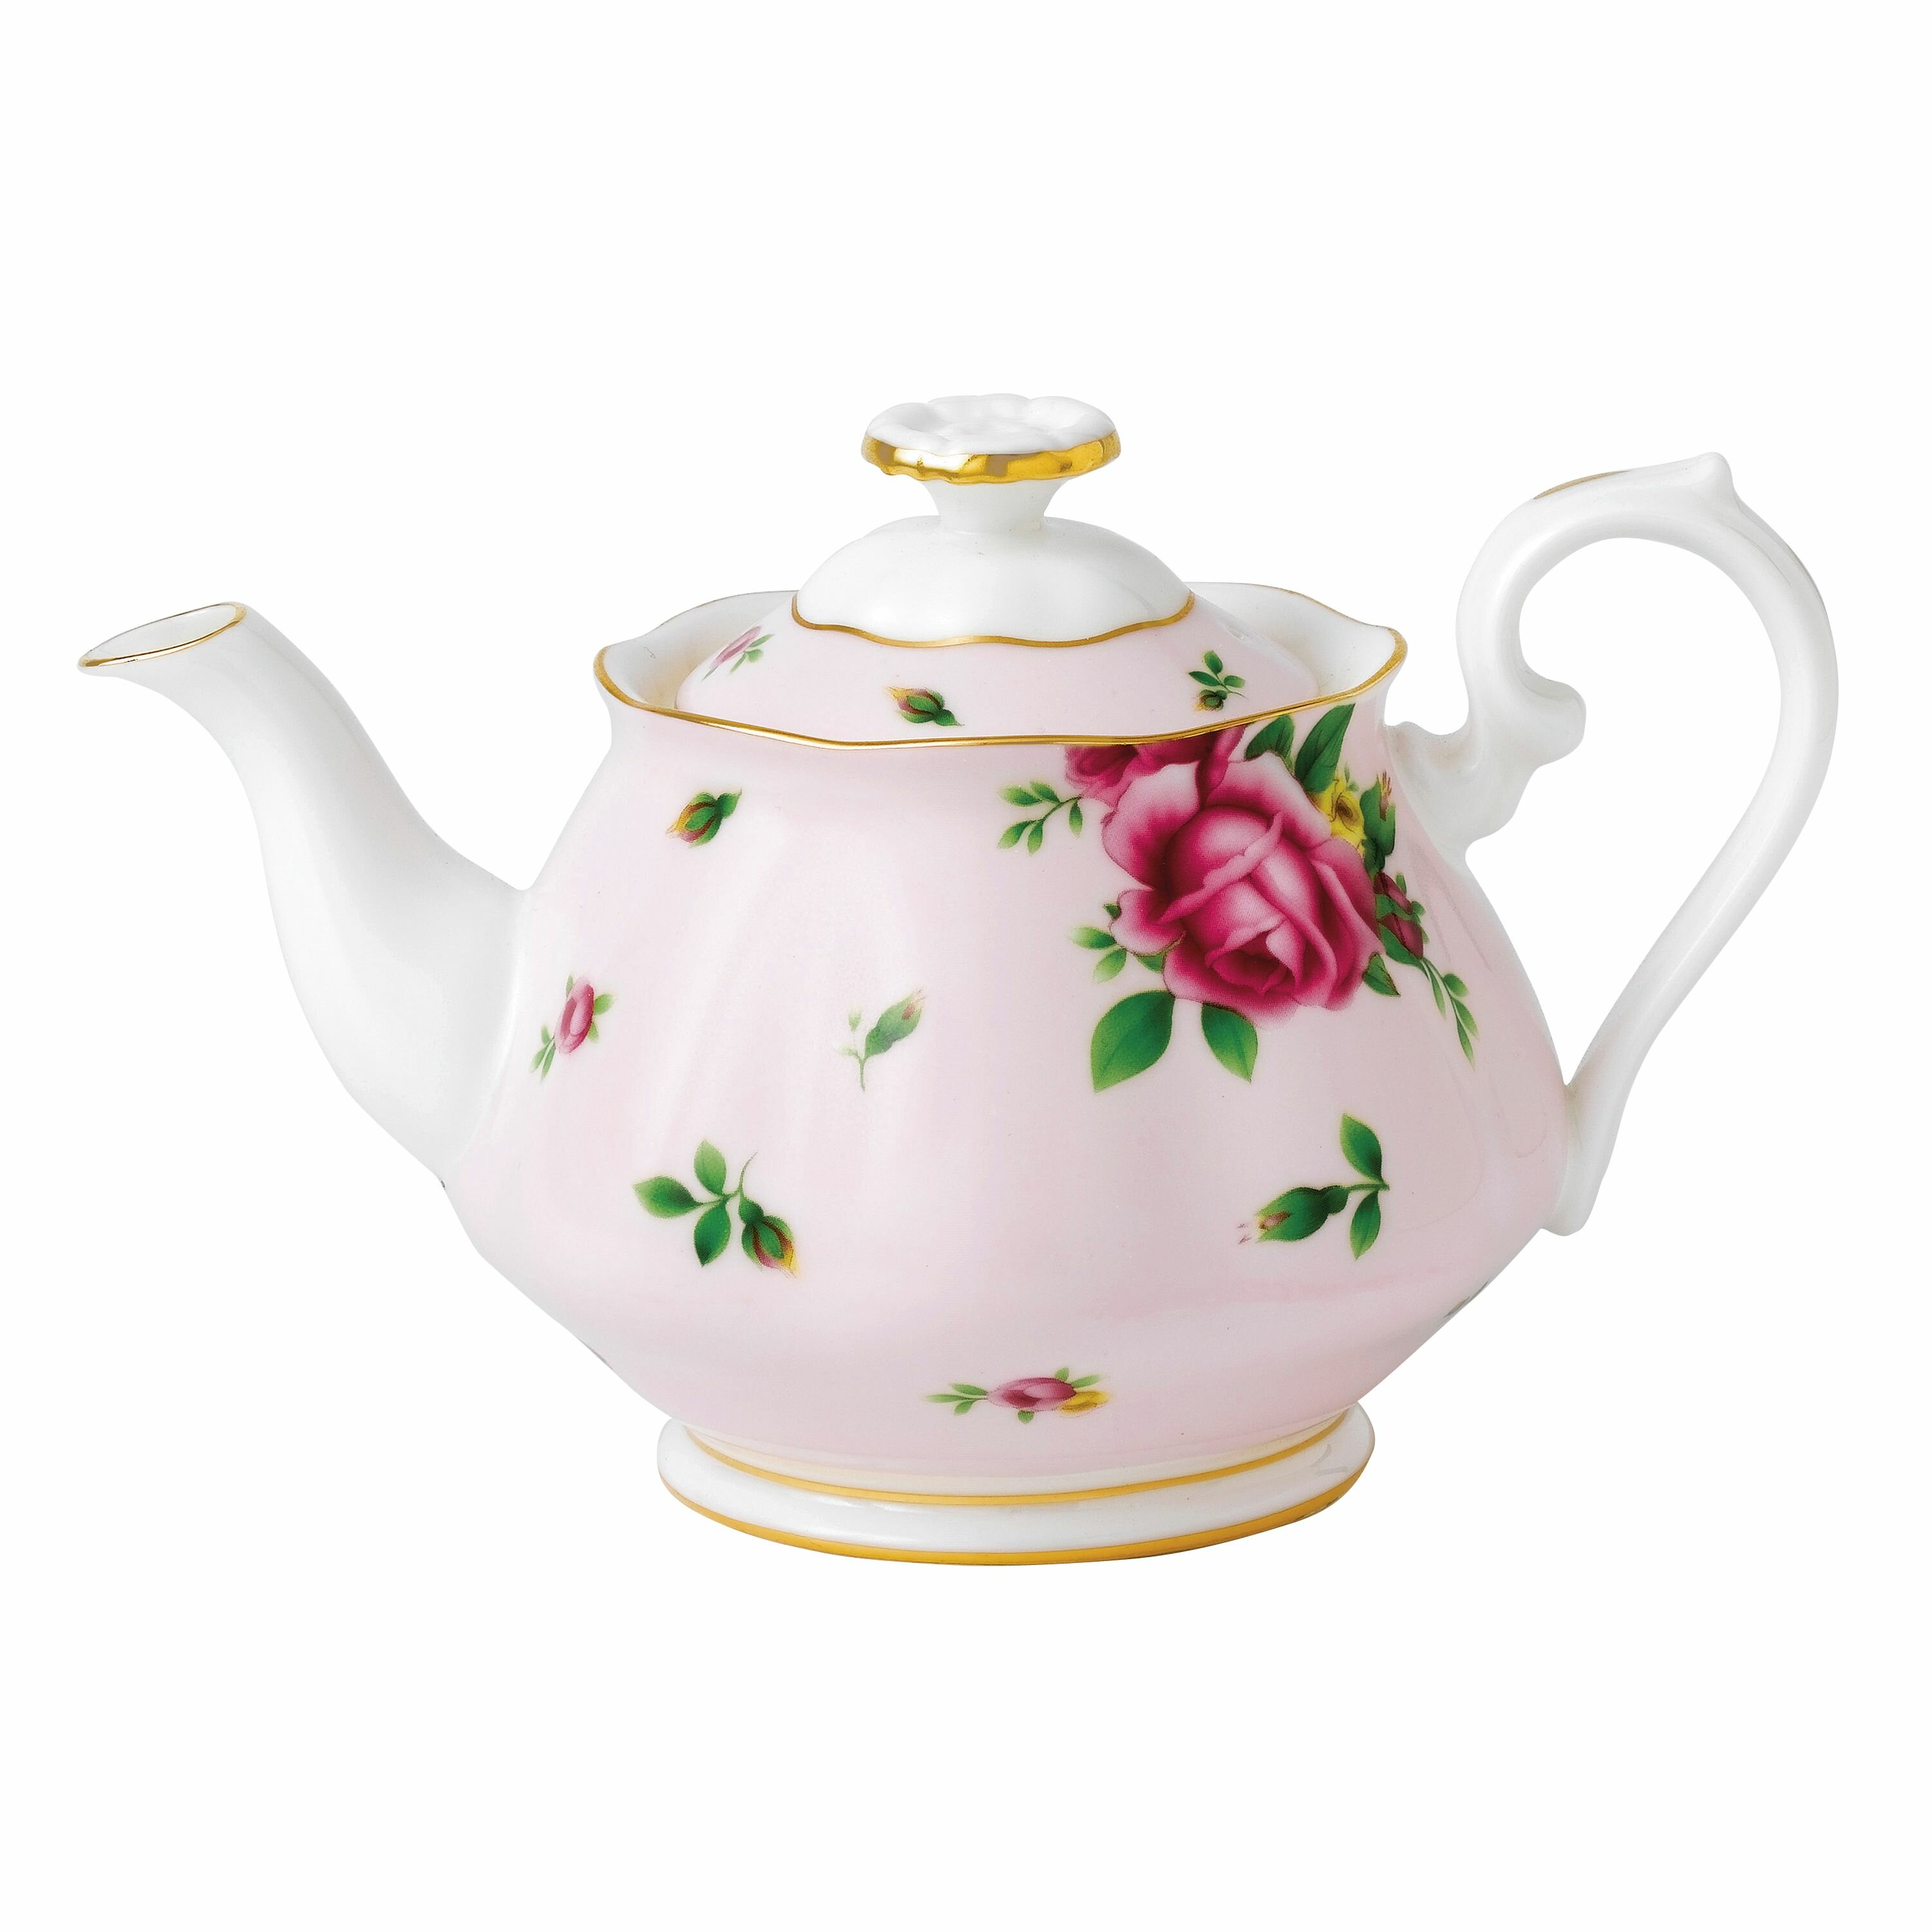 https://assets.wfcdn.com/im/58720651/compr-r85/1176/117683450/royal-albert-new-country-roses-pink-3-piece-teapot-set.jpg